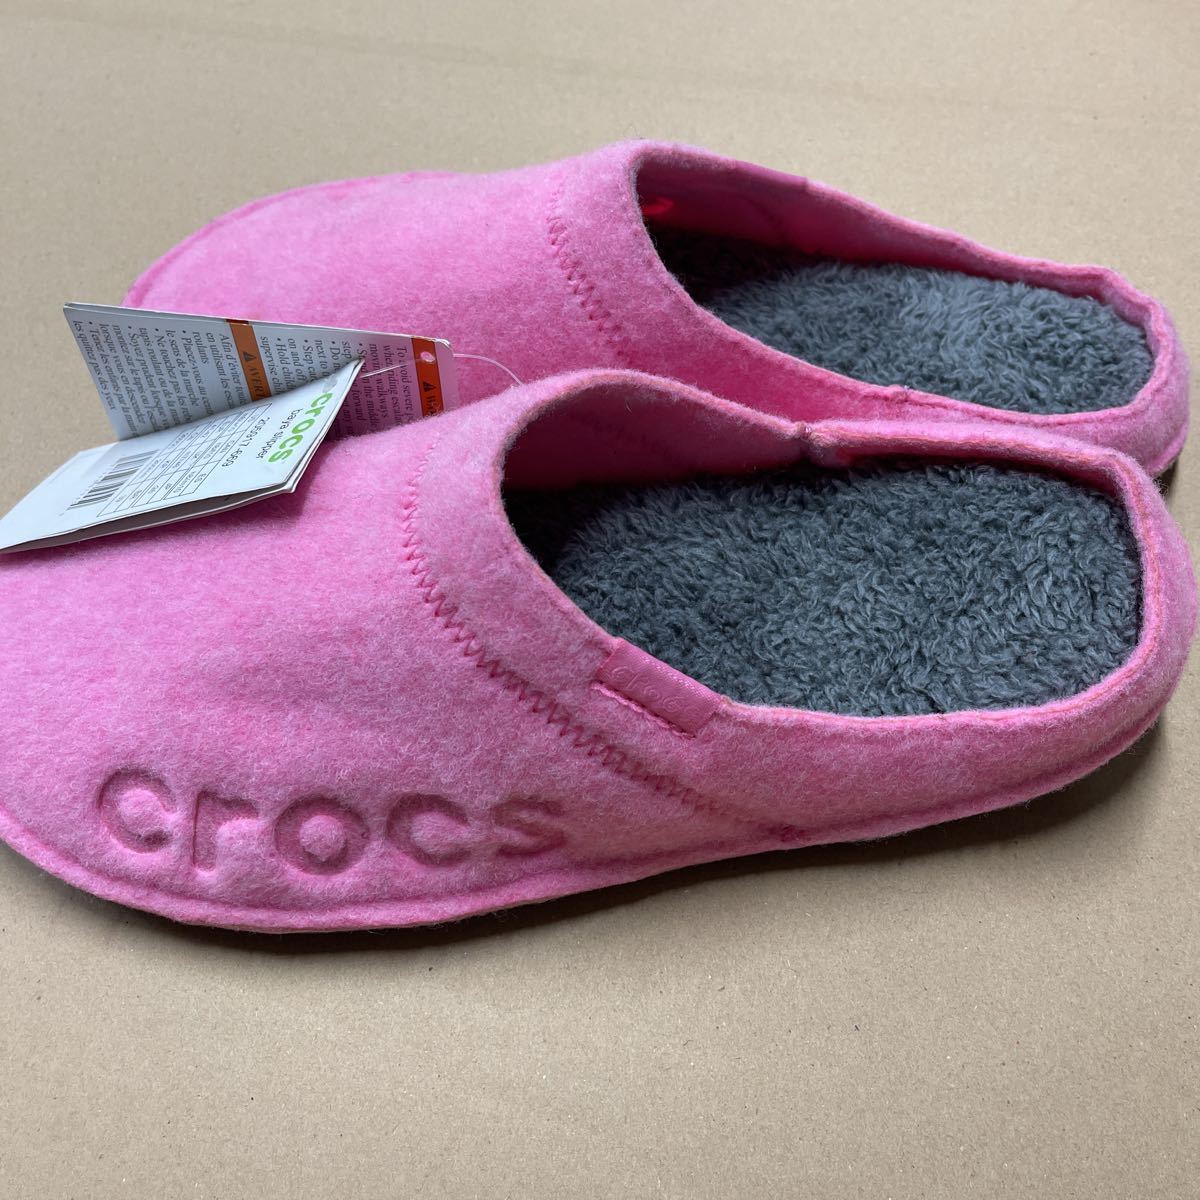 crocsbaya тапочки 205917-669 размер 26 см не использовался розовый baya slpper боа флис салон обувь Crocs 